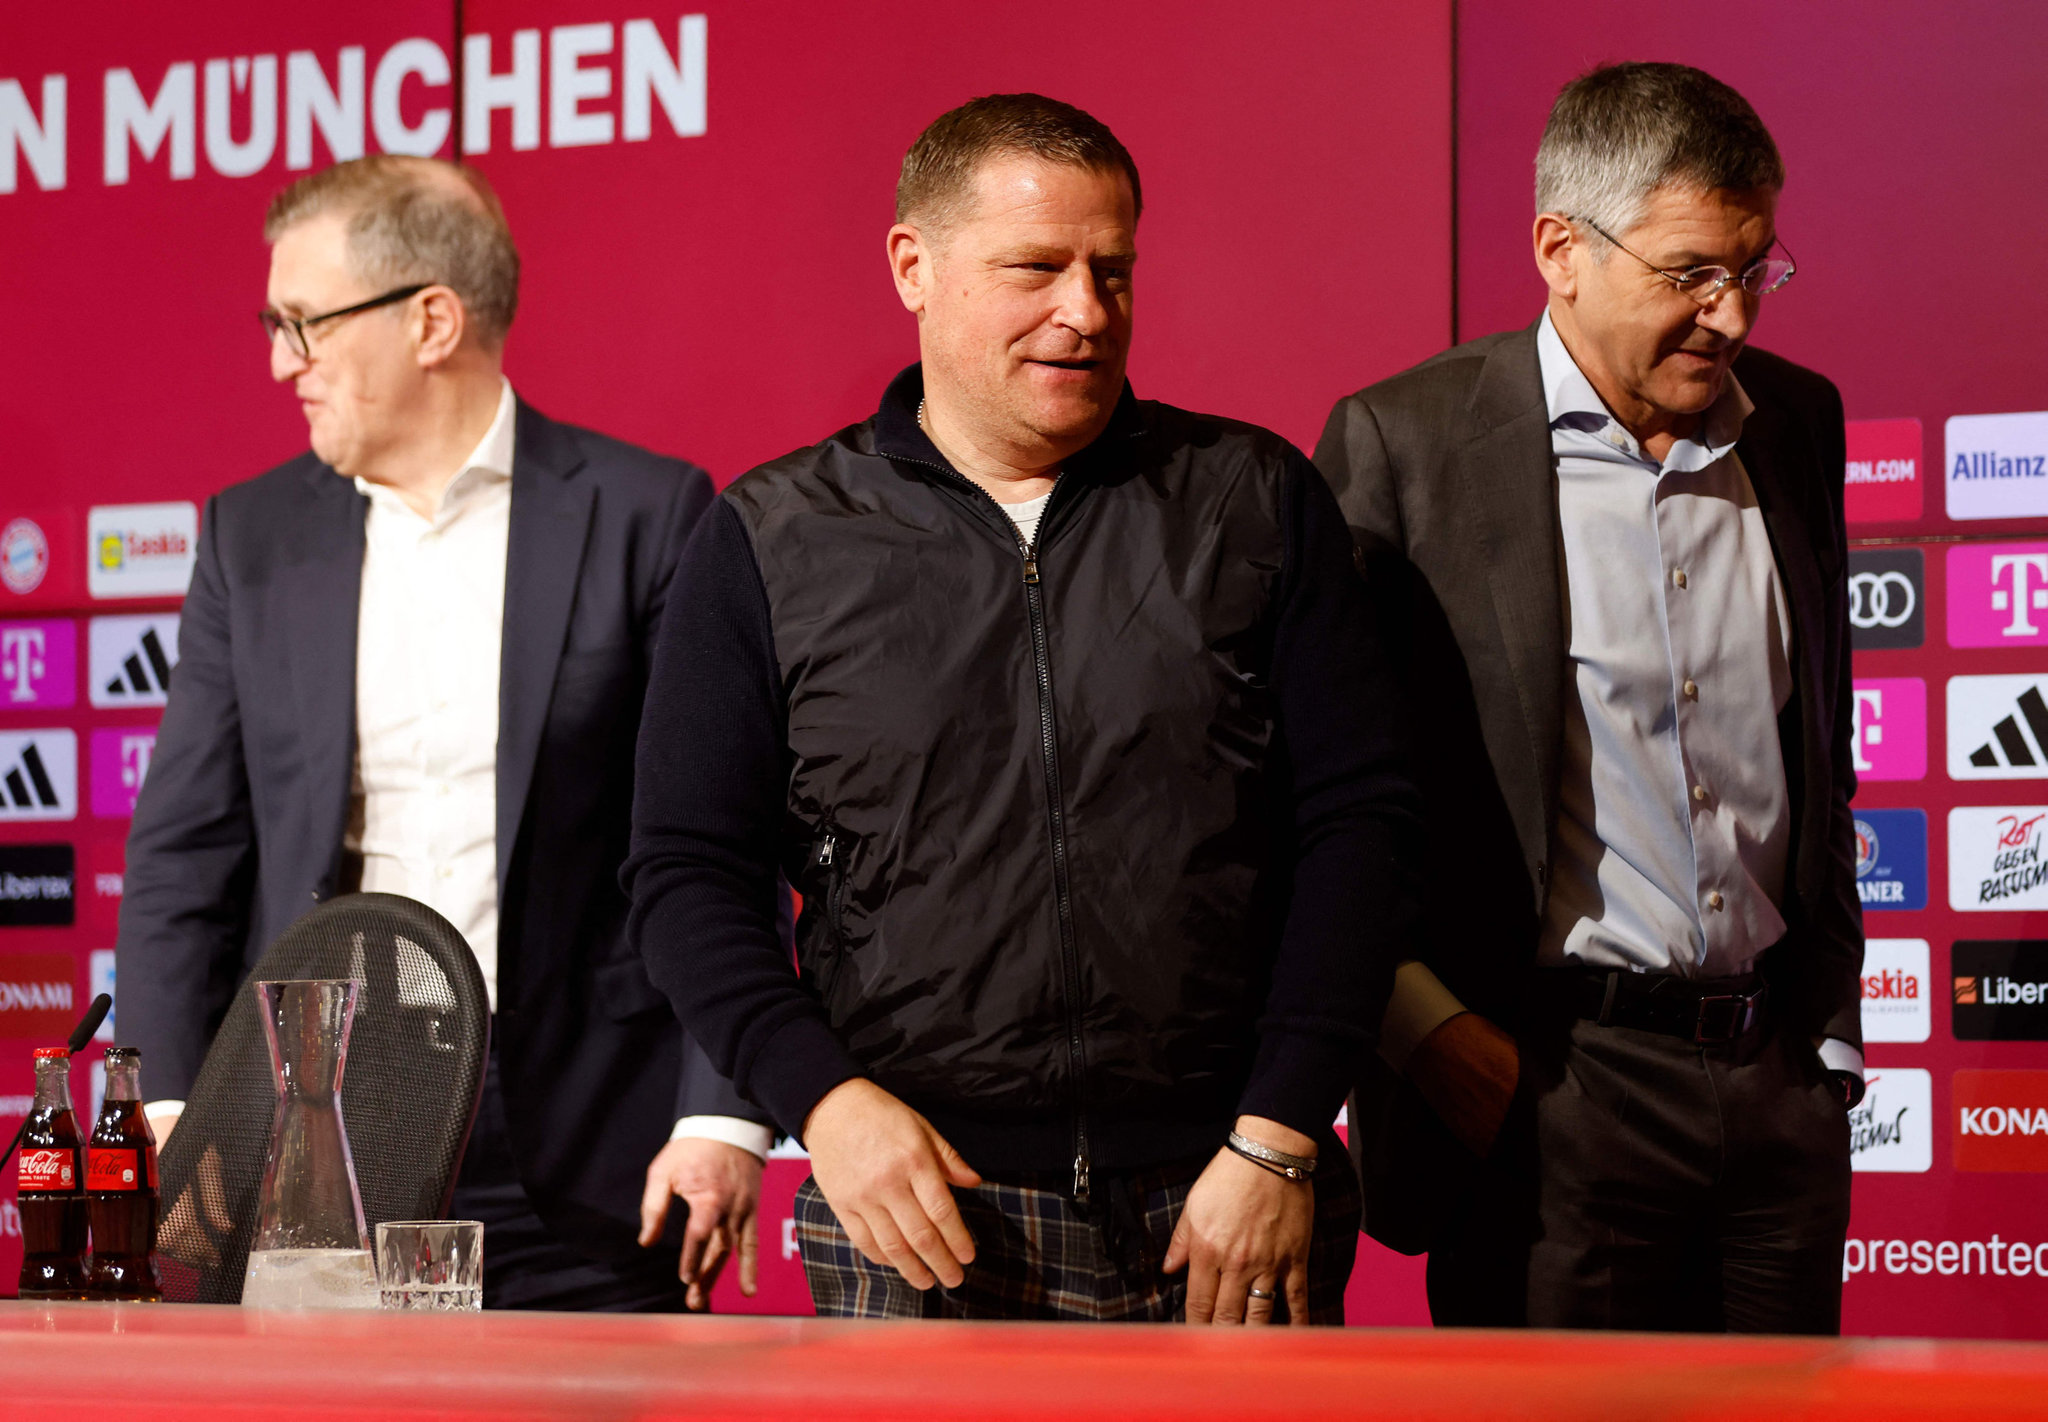 Sacha Boey Bayern Münih’ten ayrılıyor mu? Transferde sürpriz iddia